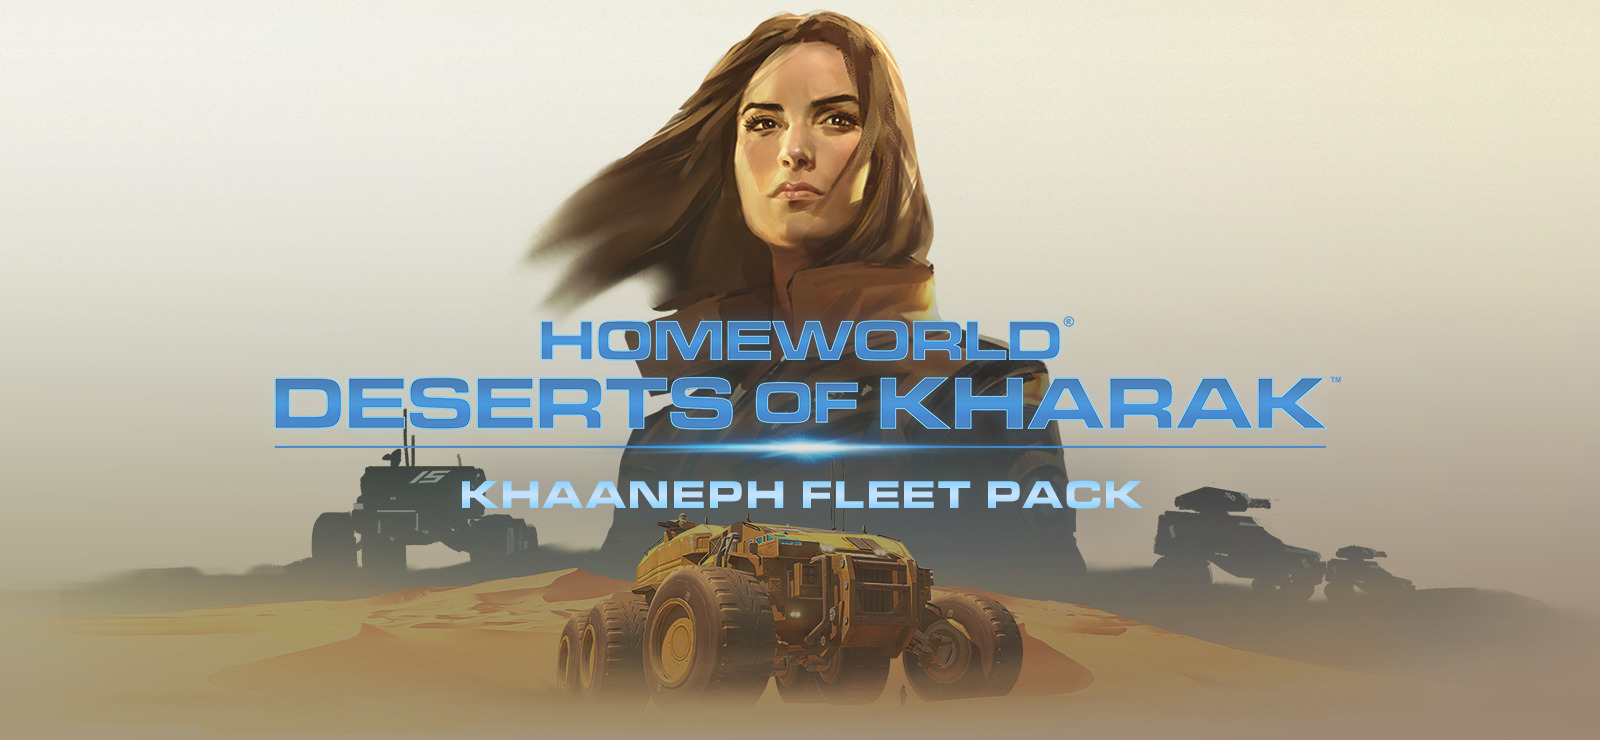 Khaaneph Fleet Pack Download For Mac